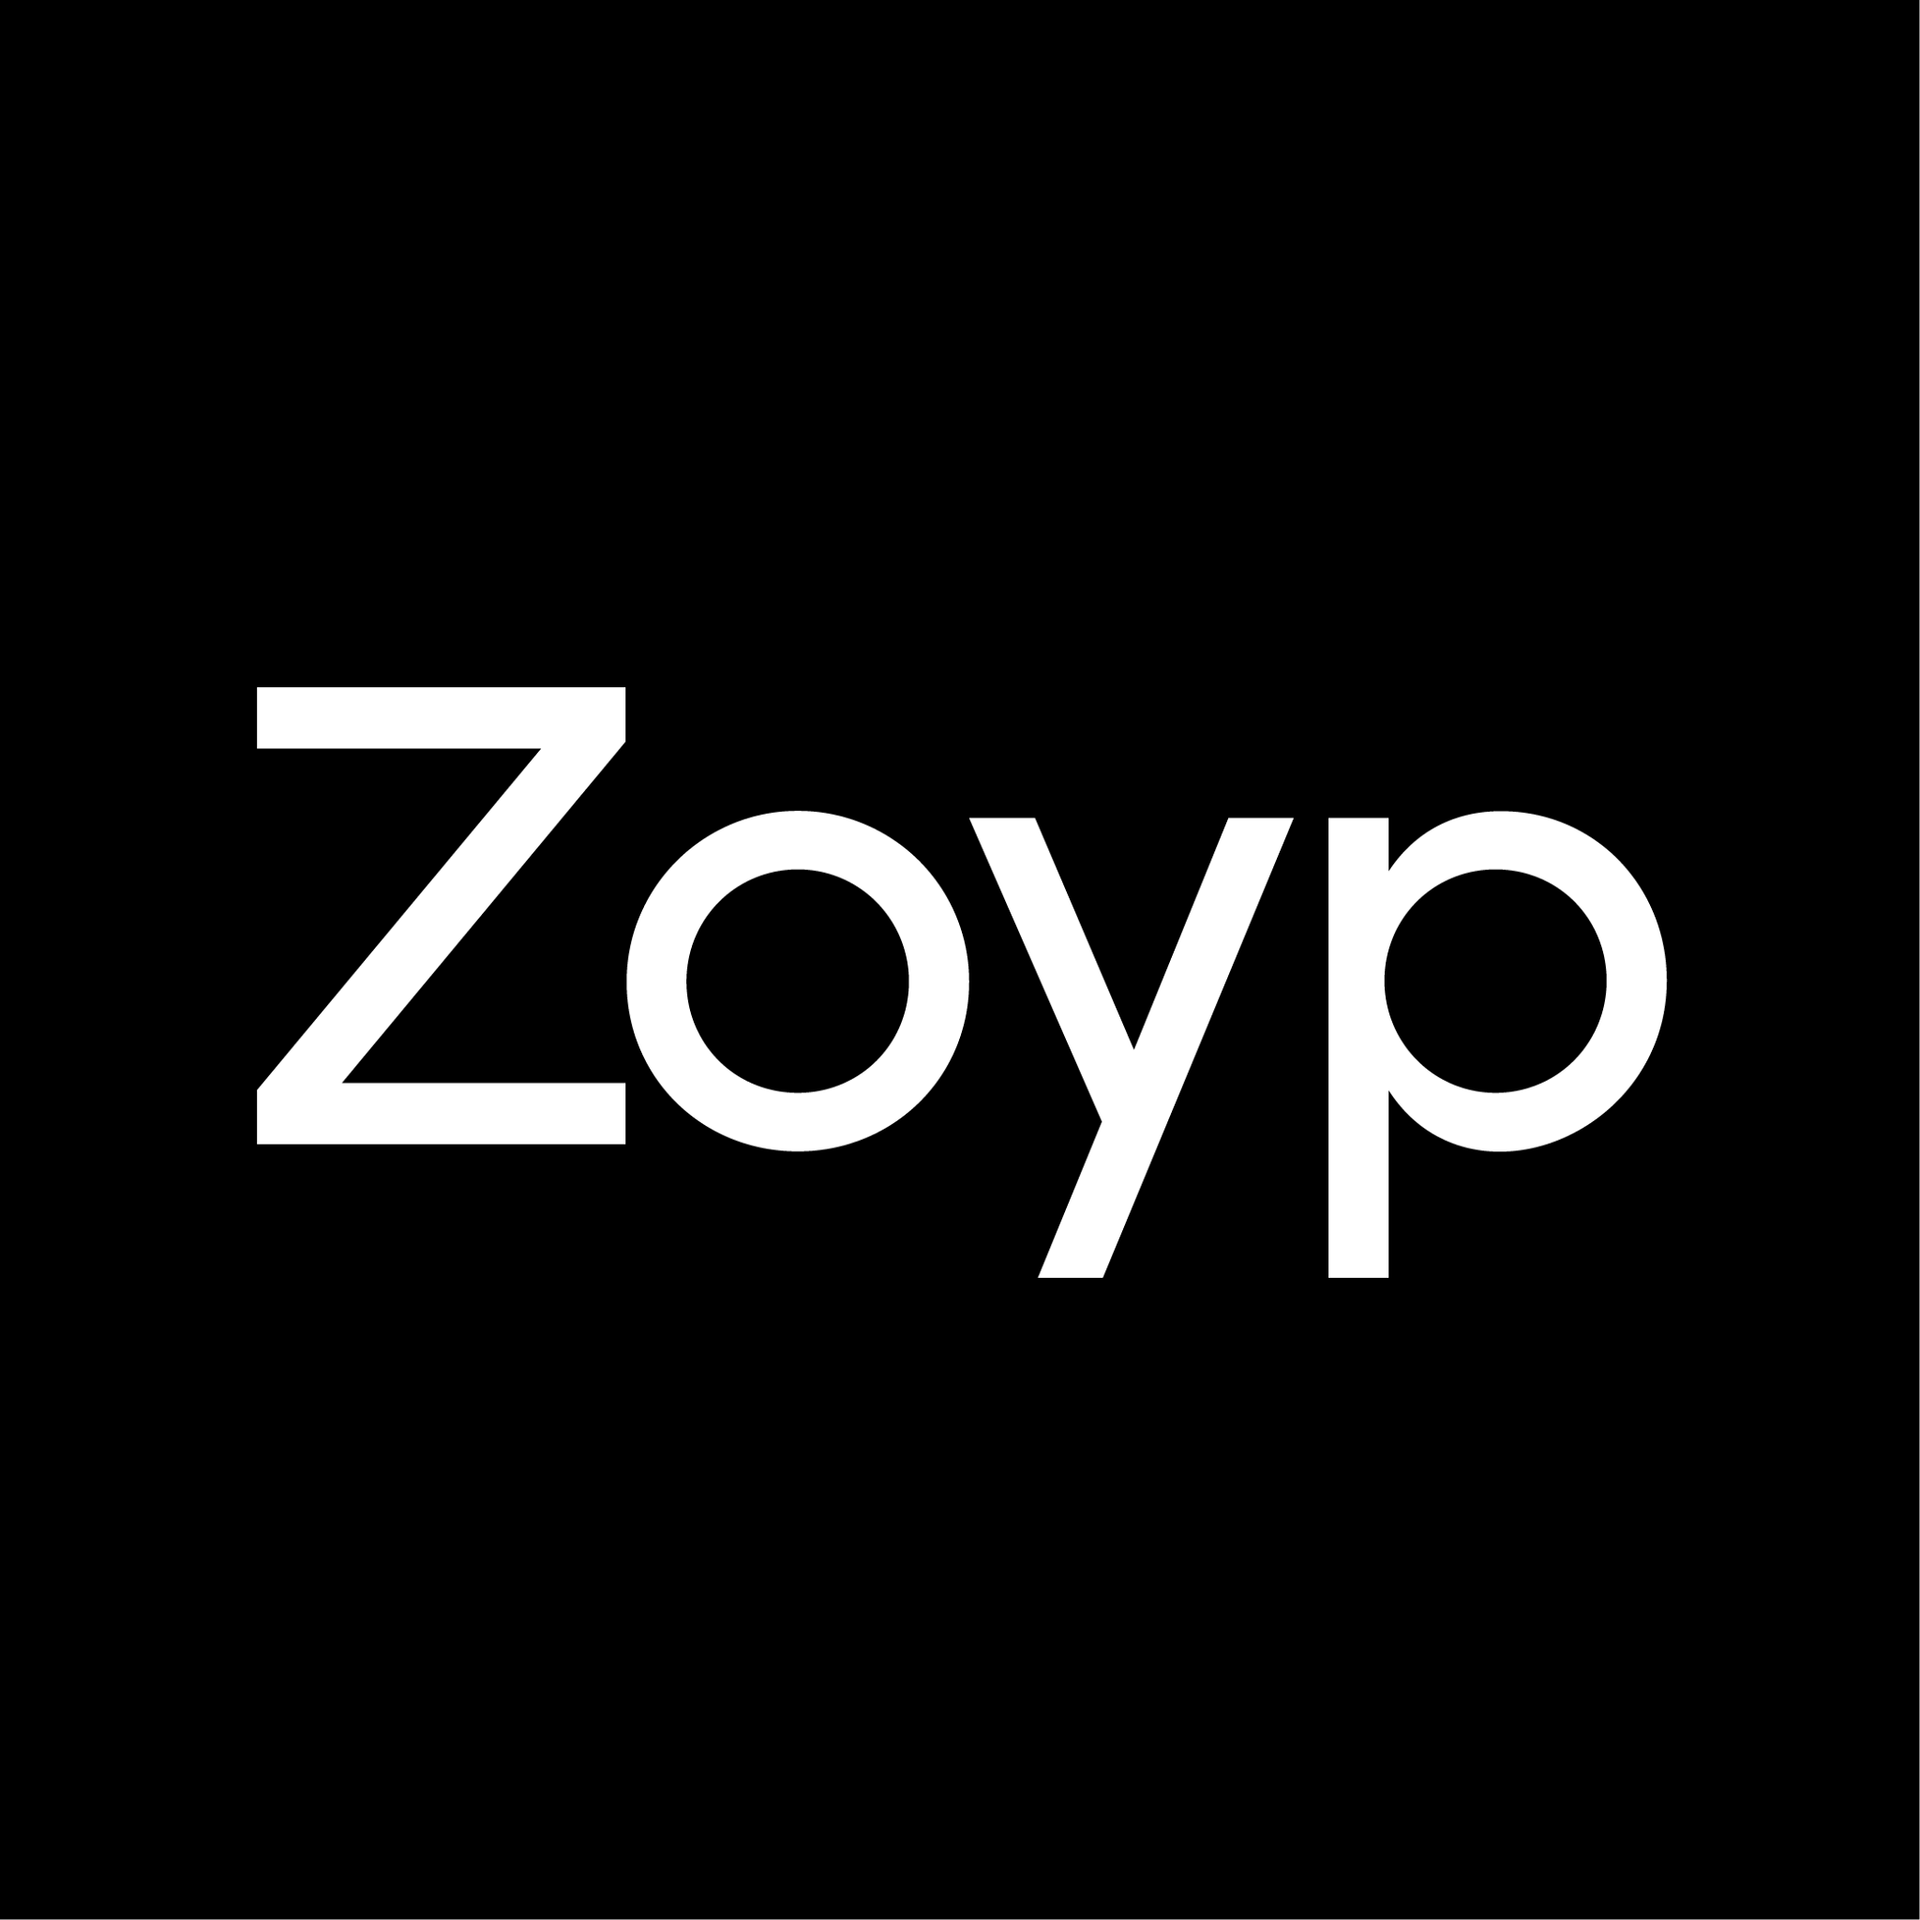 Zoyp Wakefield Taxi logo